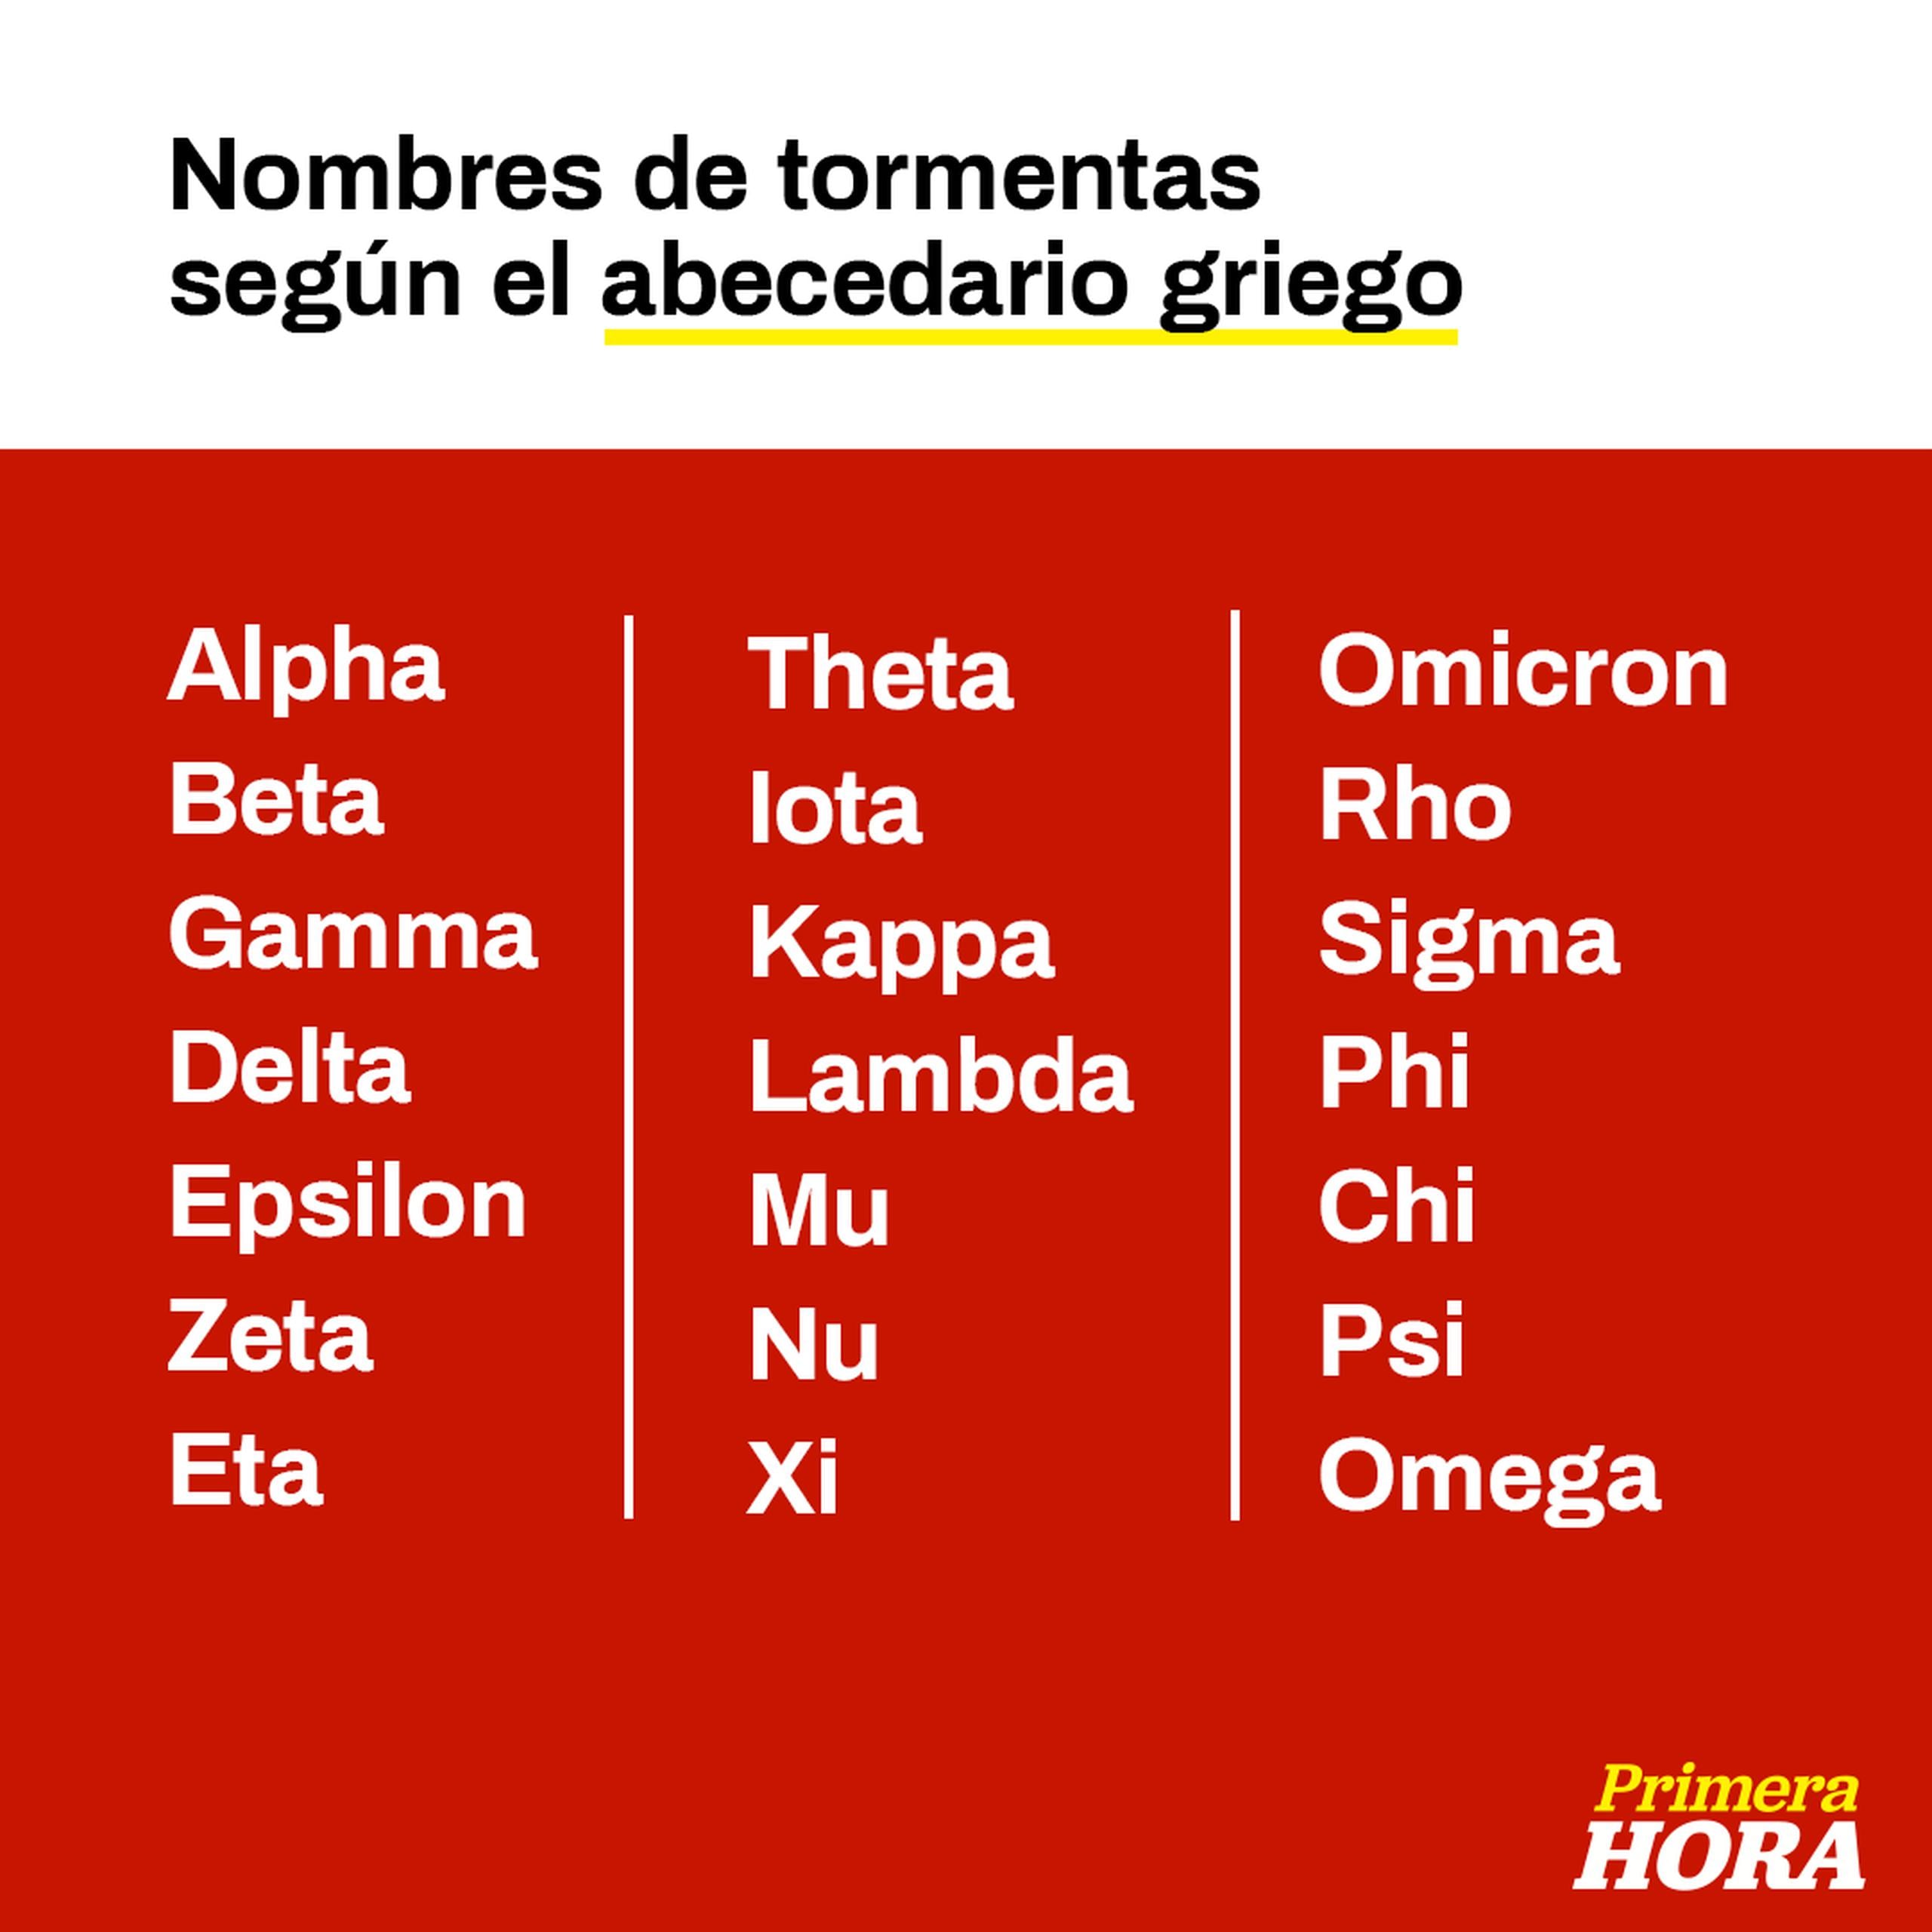 Tras agotar la lista tradicional de nombres de tormentas en el Atlántico, comenzamos el uso del abecedario griego.